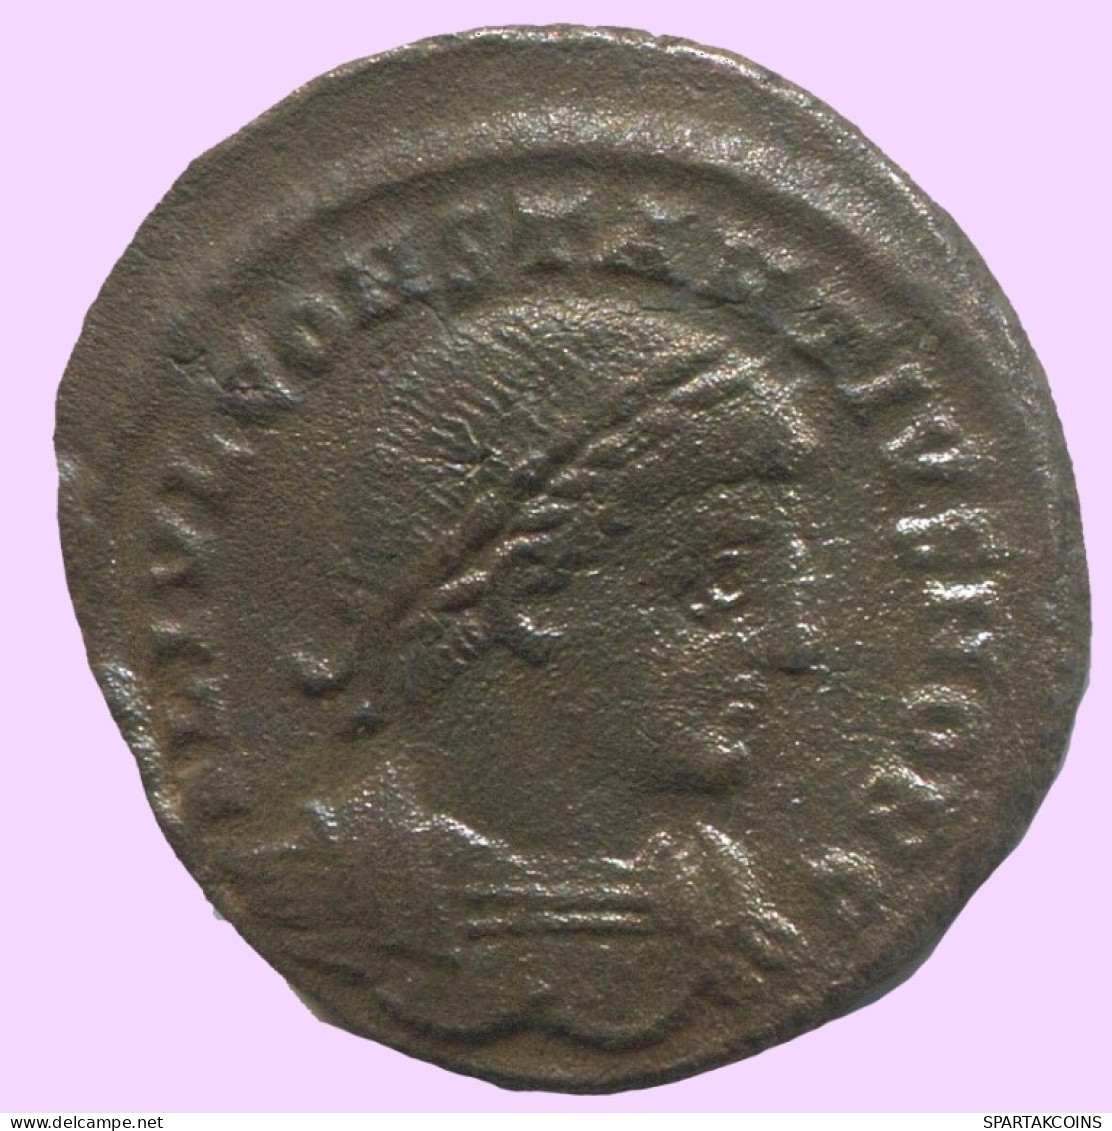 Authentische Antike Spätrömische Münze RÖMISCHE Münze 2.6g/18mm #ANT2247.14.D.A - El Bajo Imperio Romano (363 / 476)